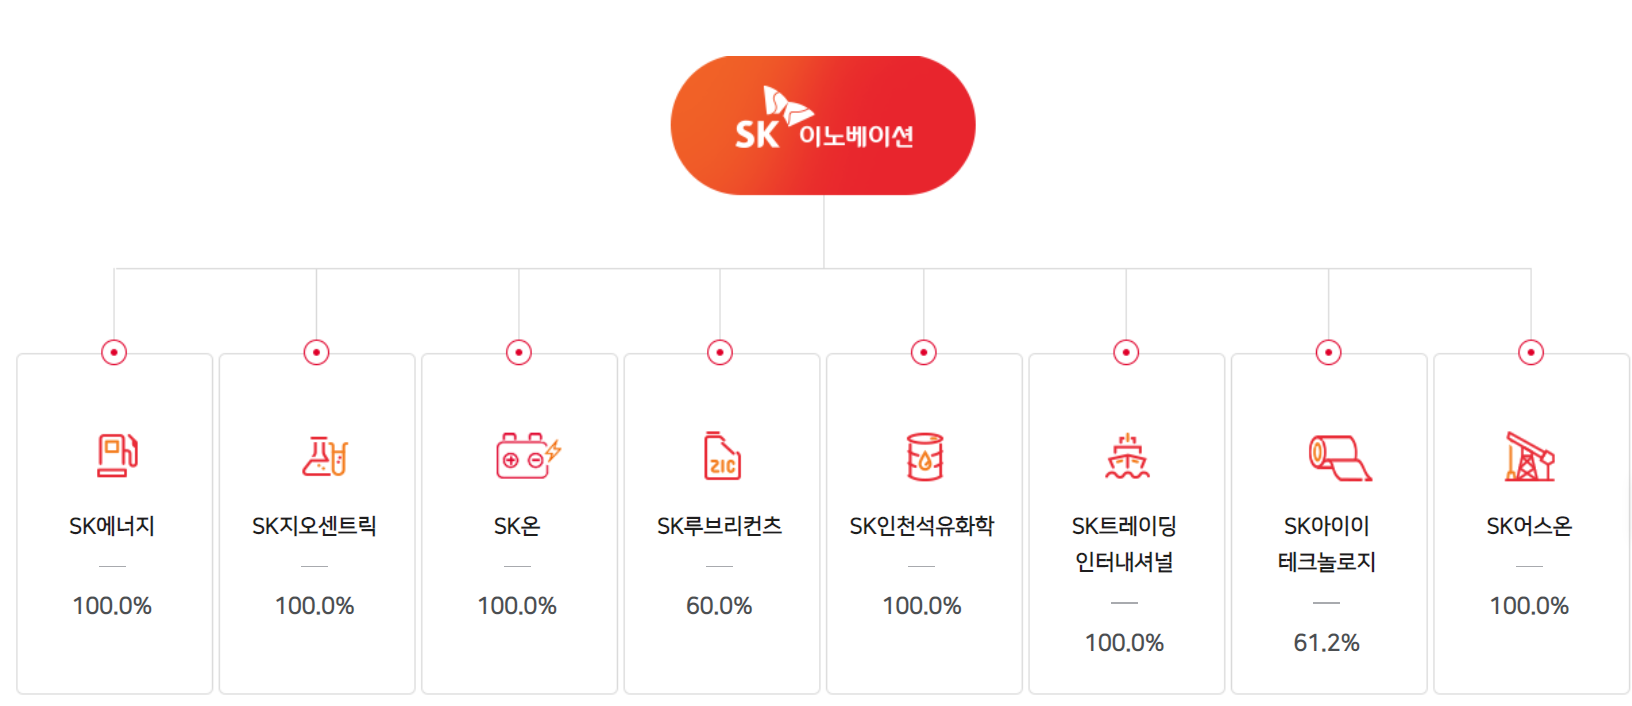 SK 이노베이션 주요 자회사